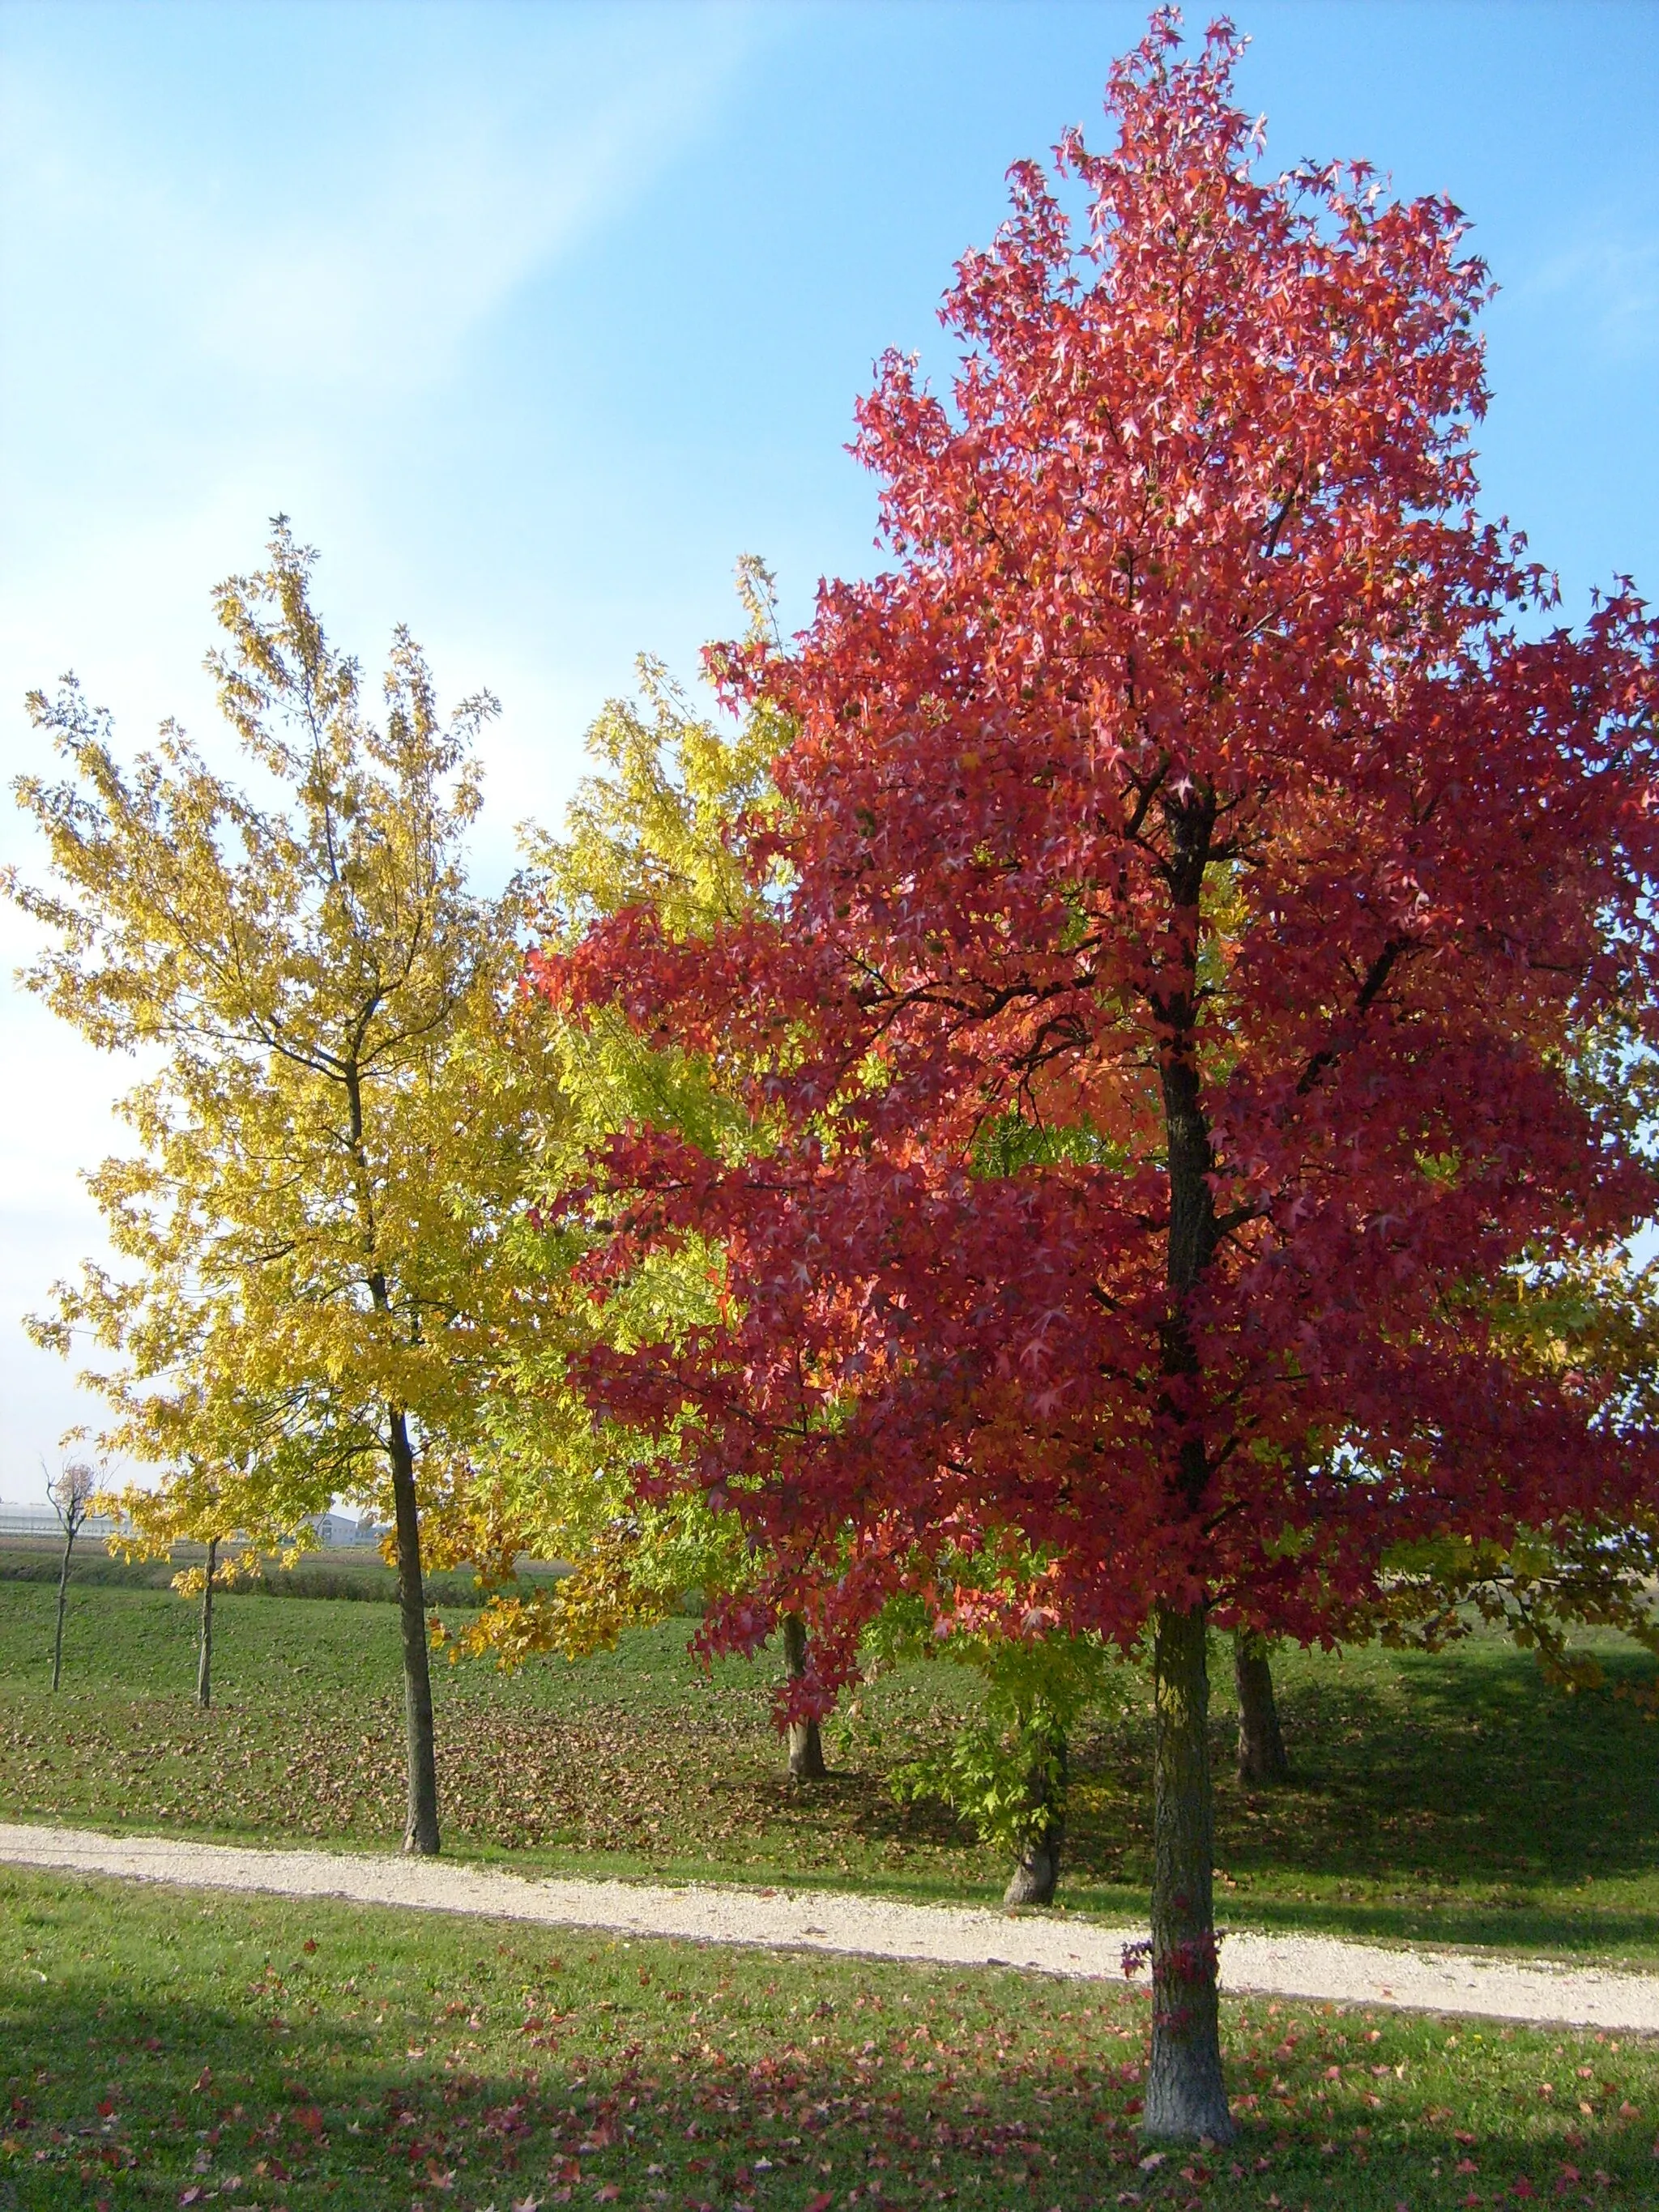 Photo showing: L'autunno e gli alberi ripresi nel parco di Marcon, provincia di Venezia.